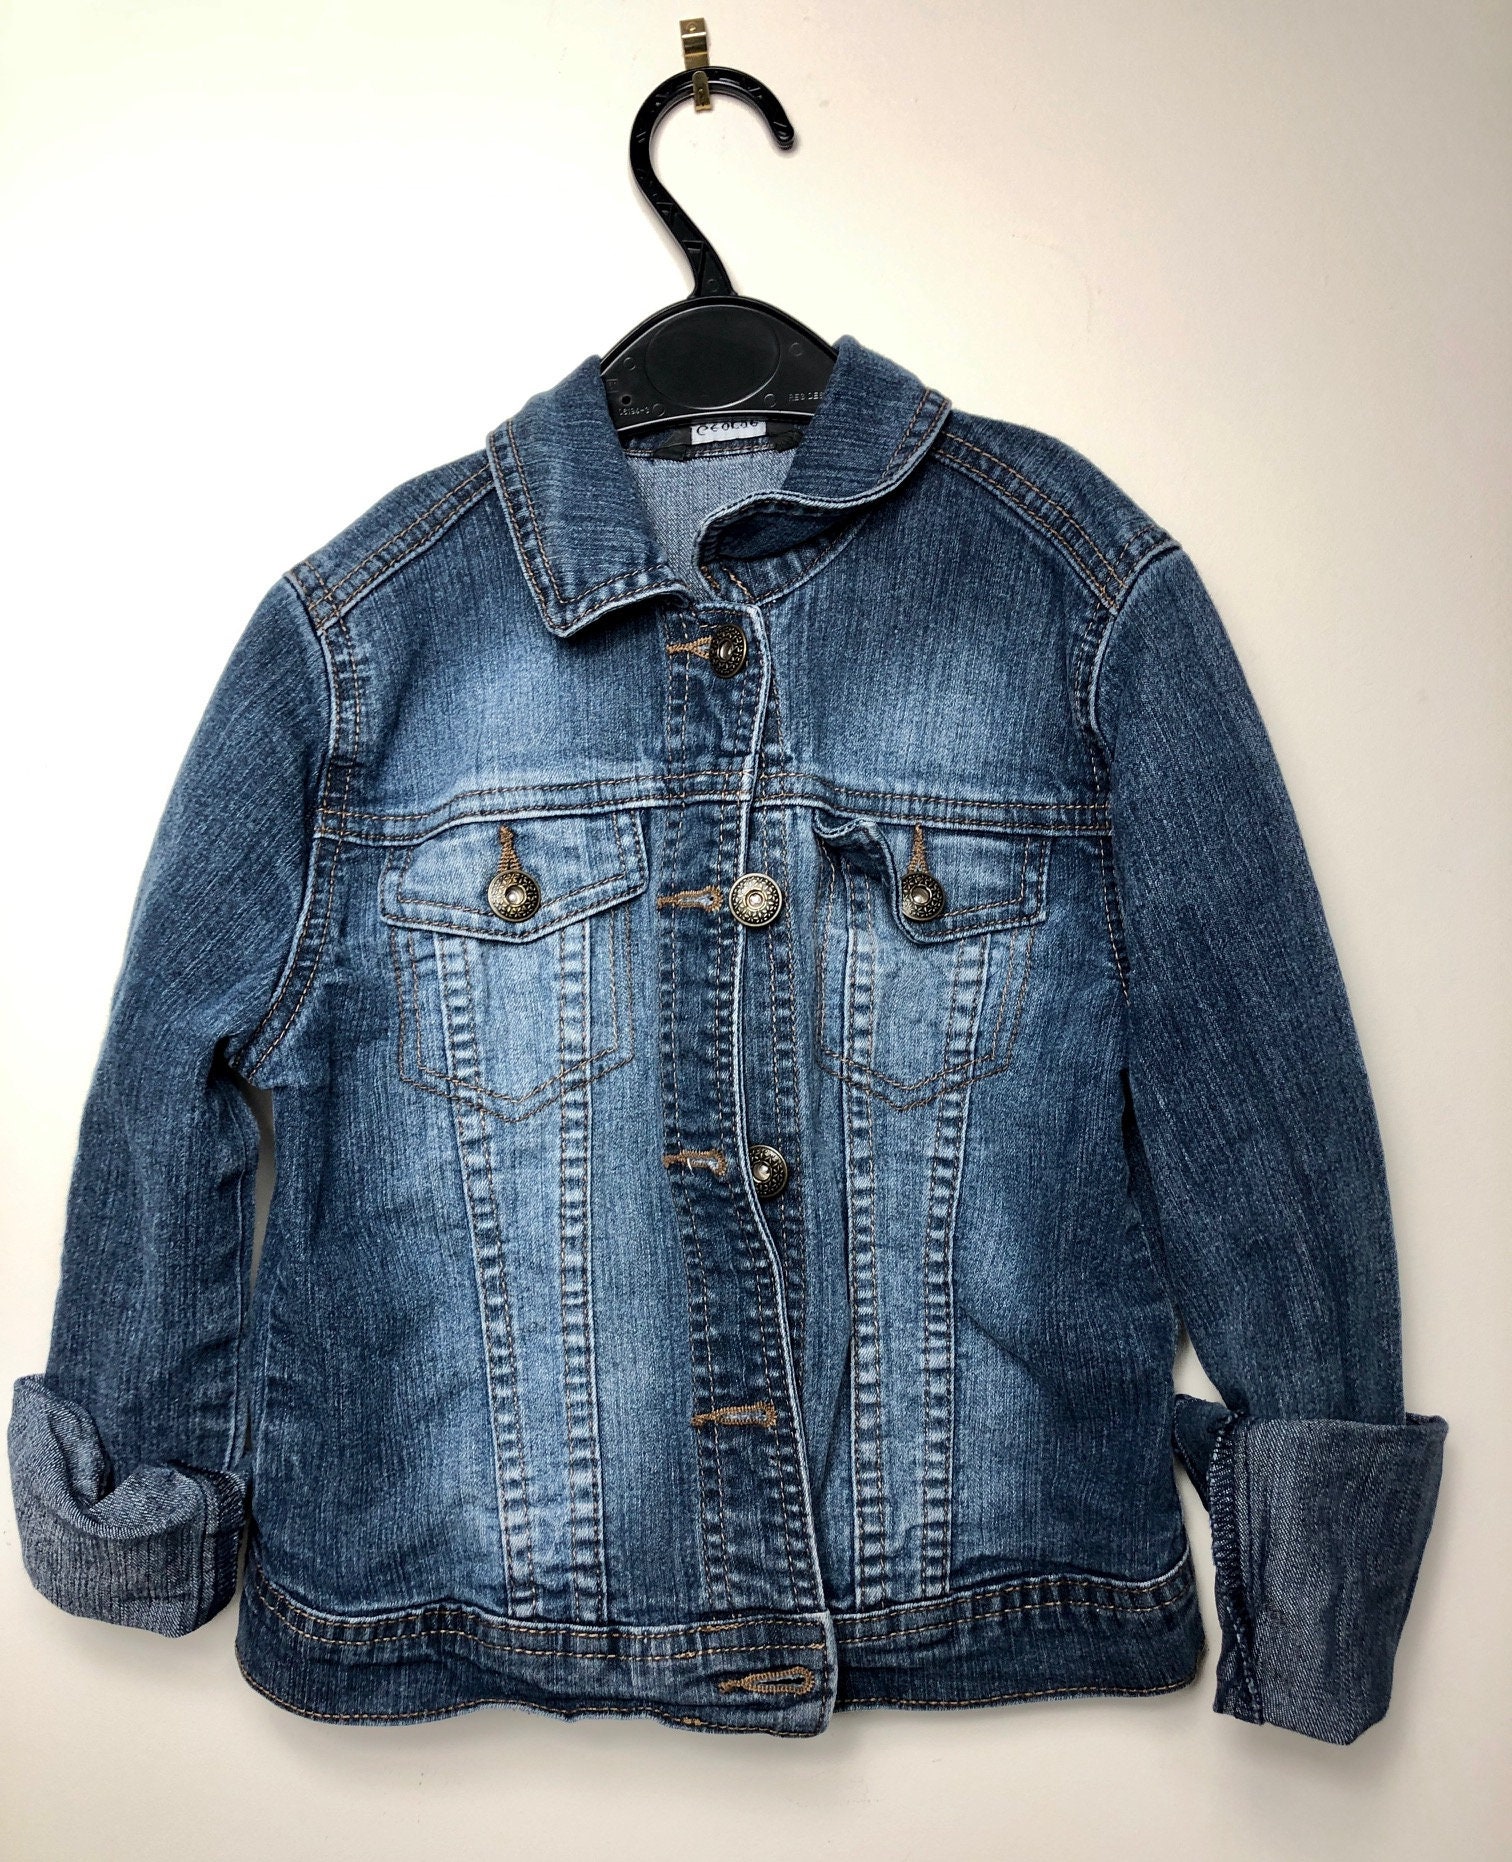 Kids Embroidery Customised Denim Jacket - Etsy 日本